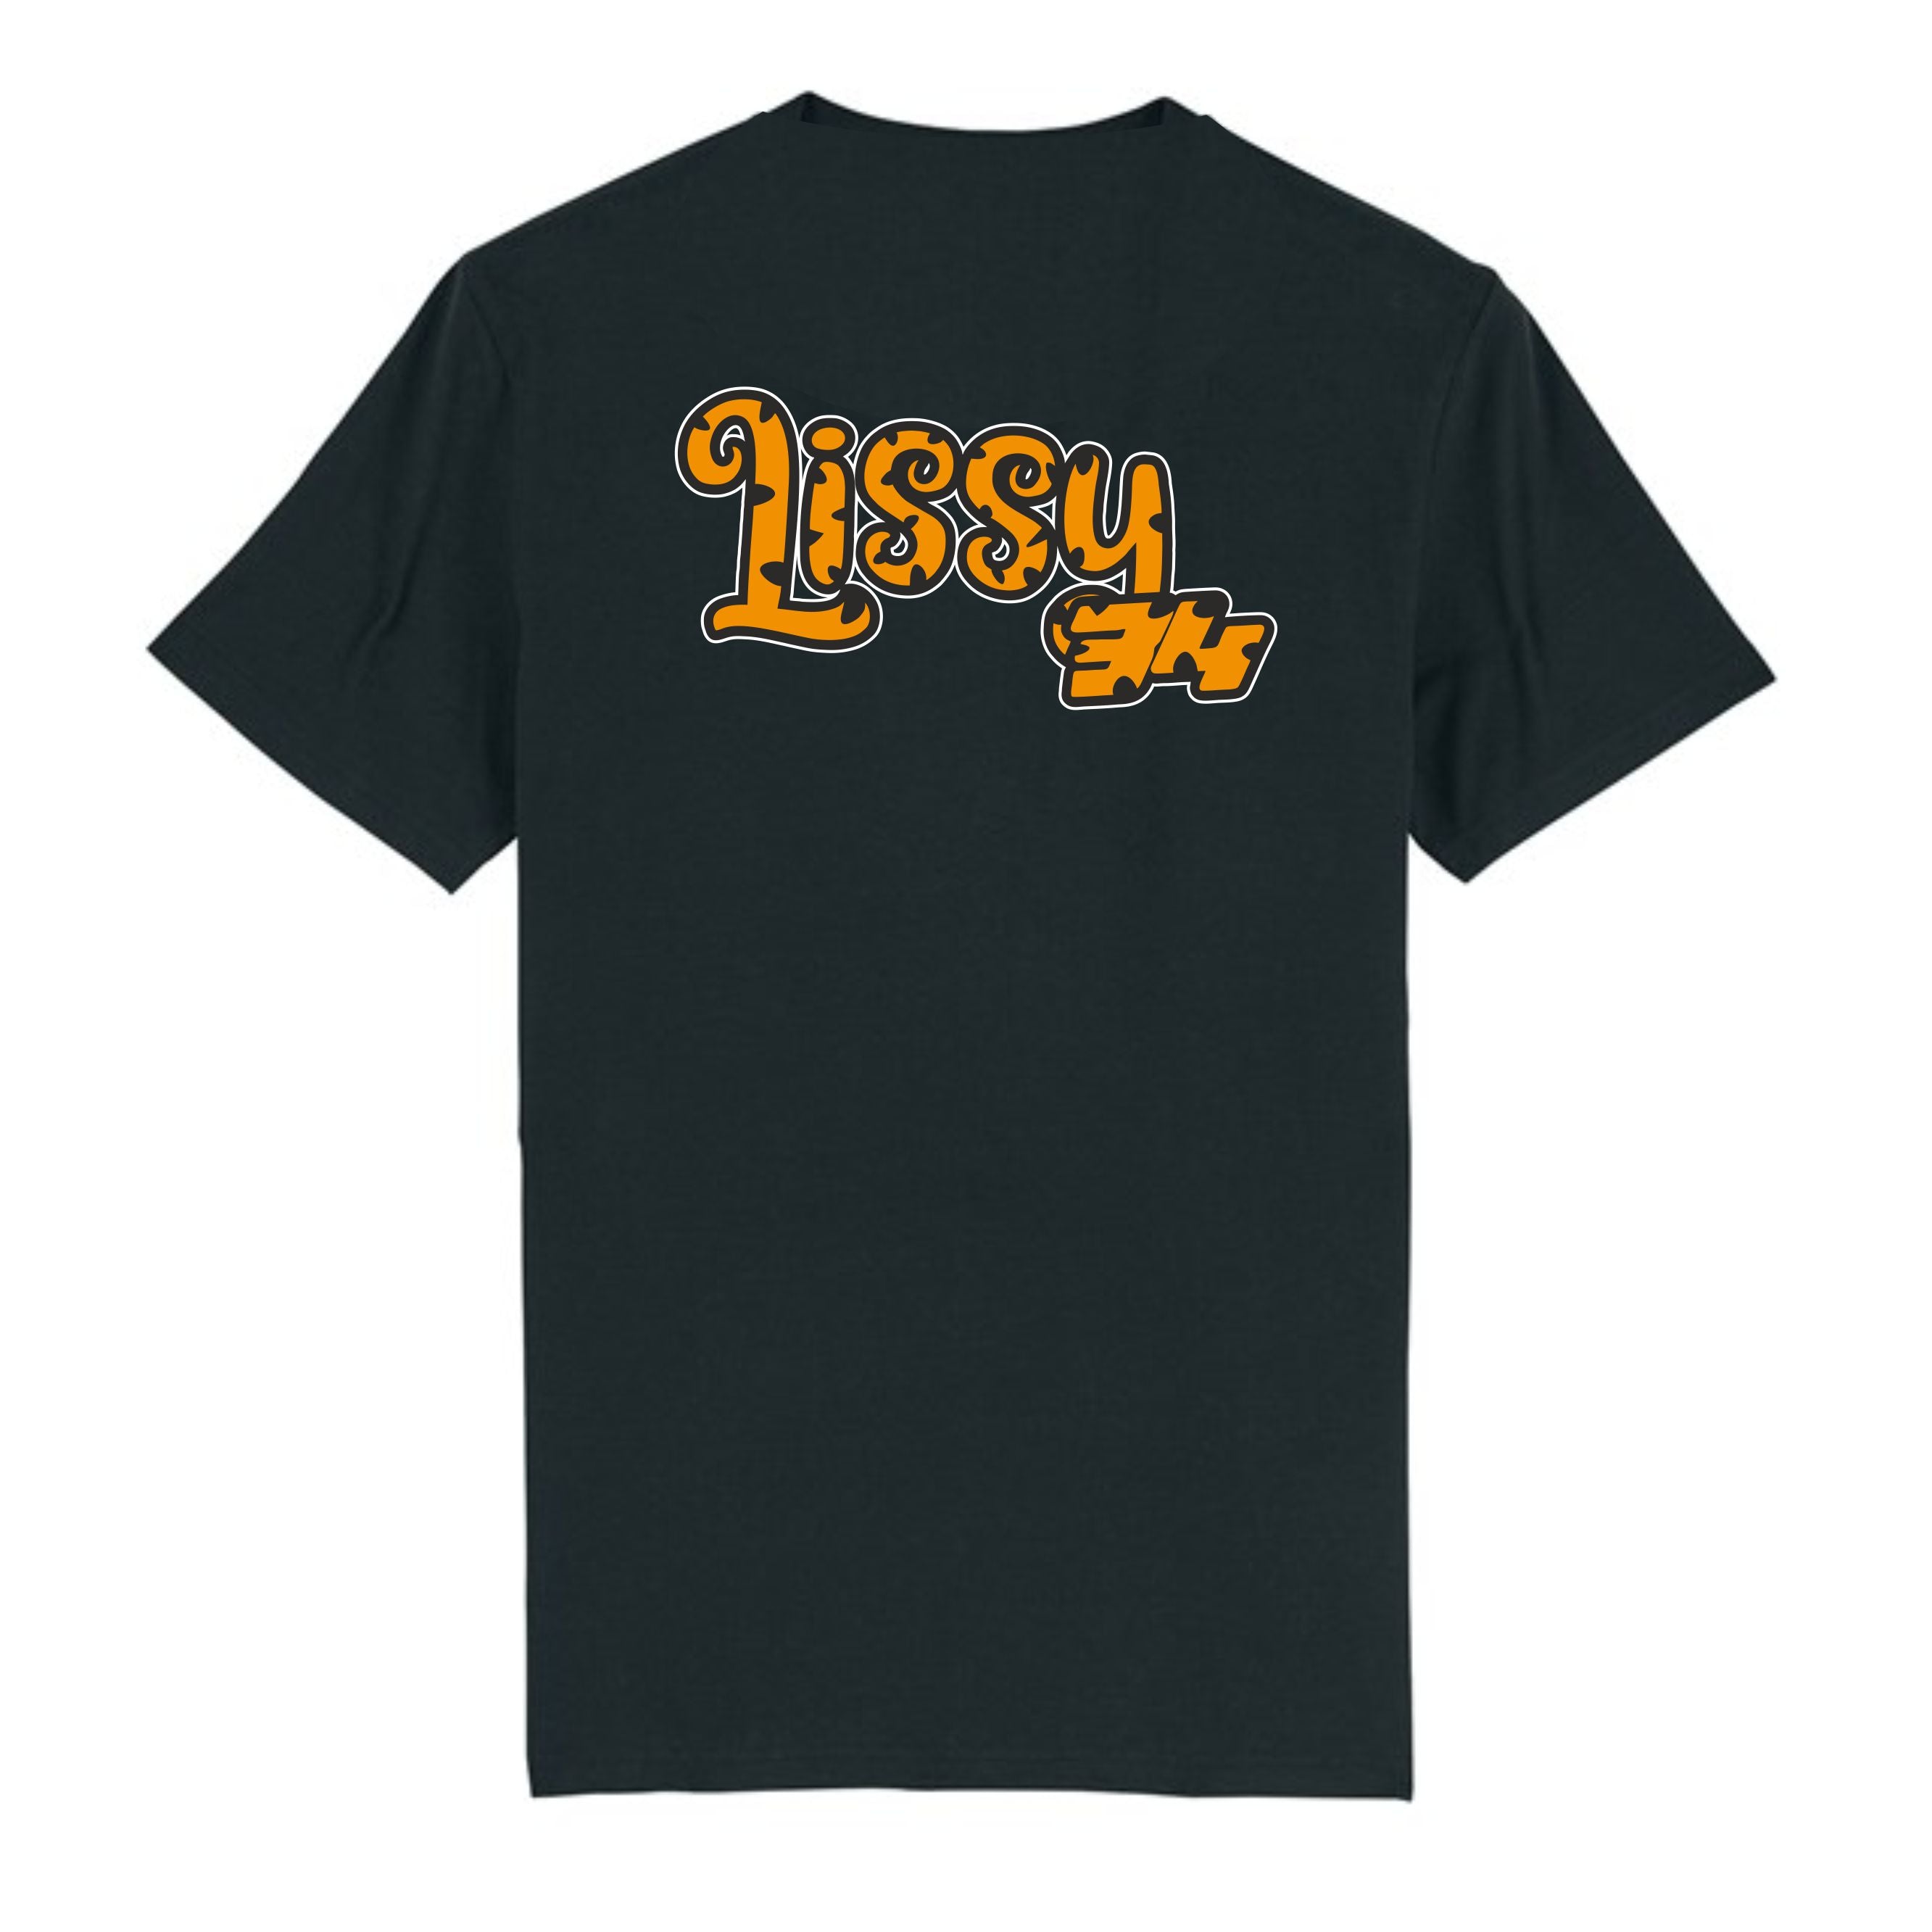 Lissy34 Printed T-shirt